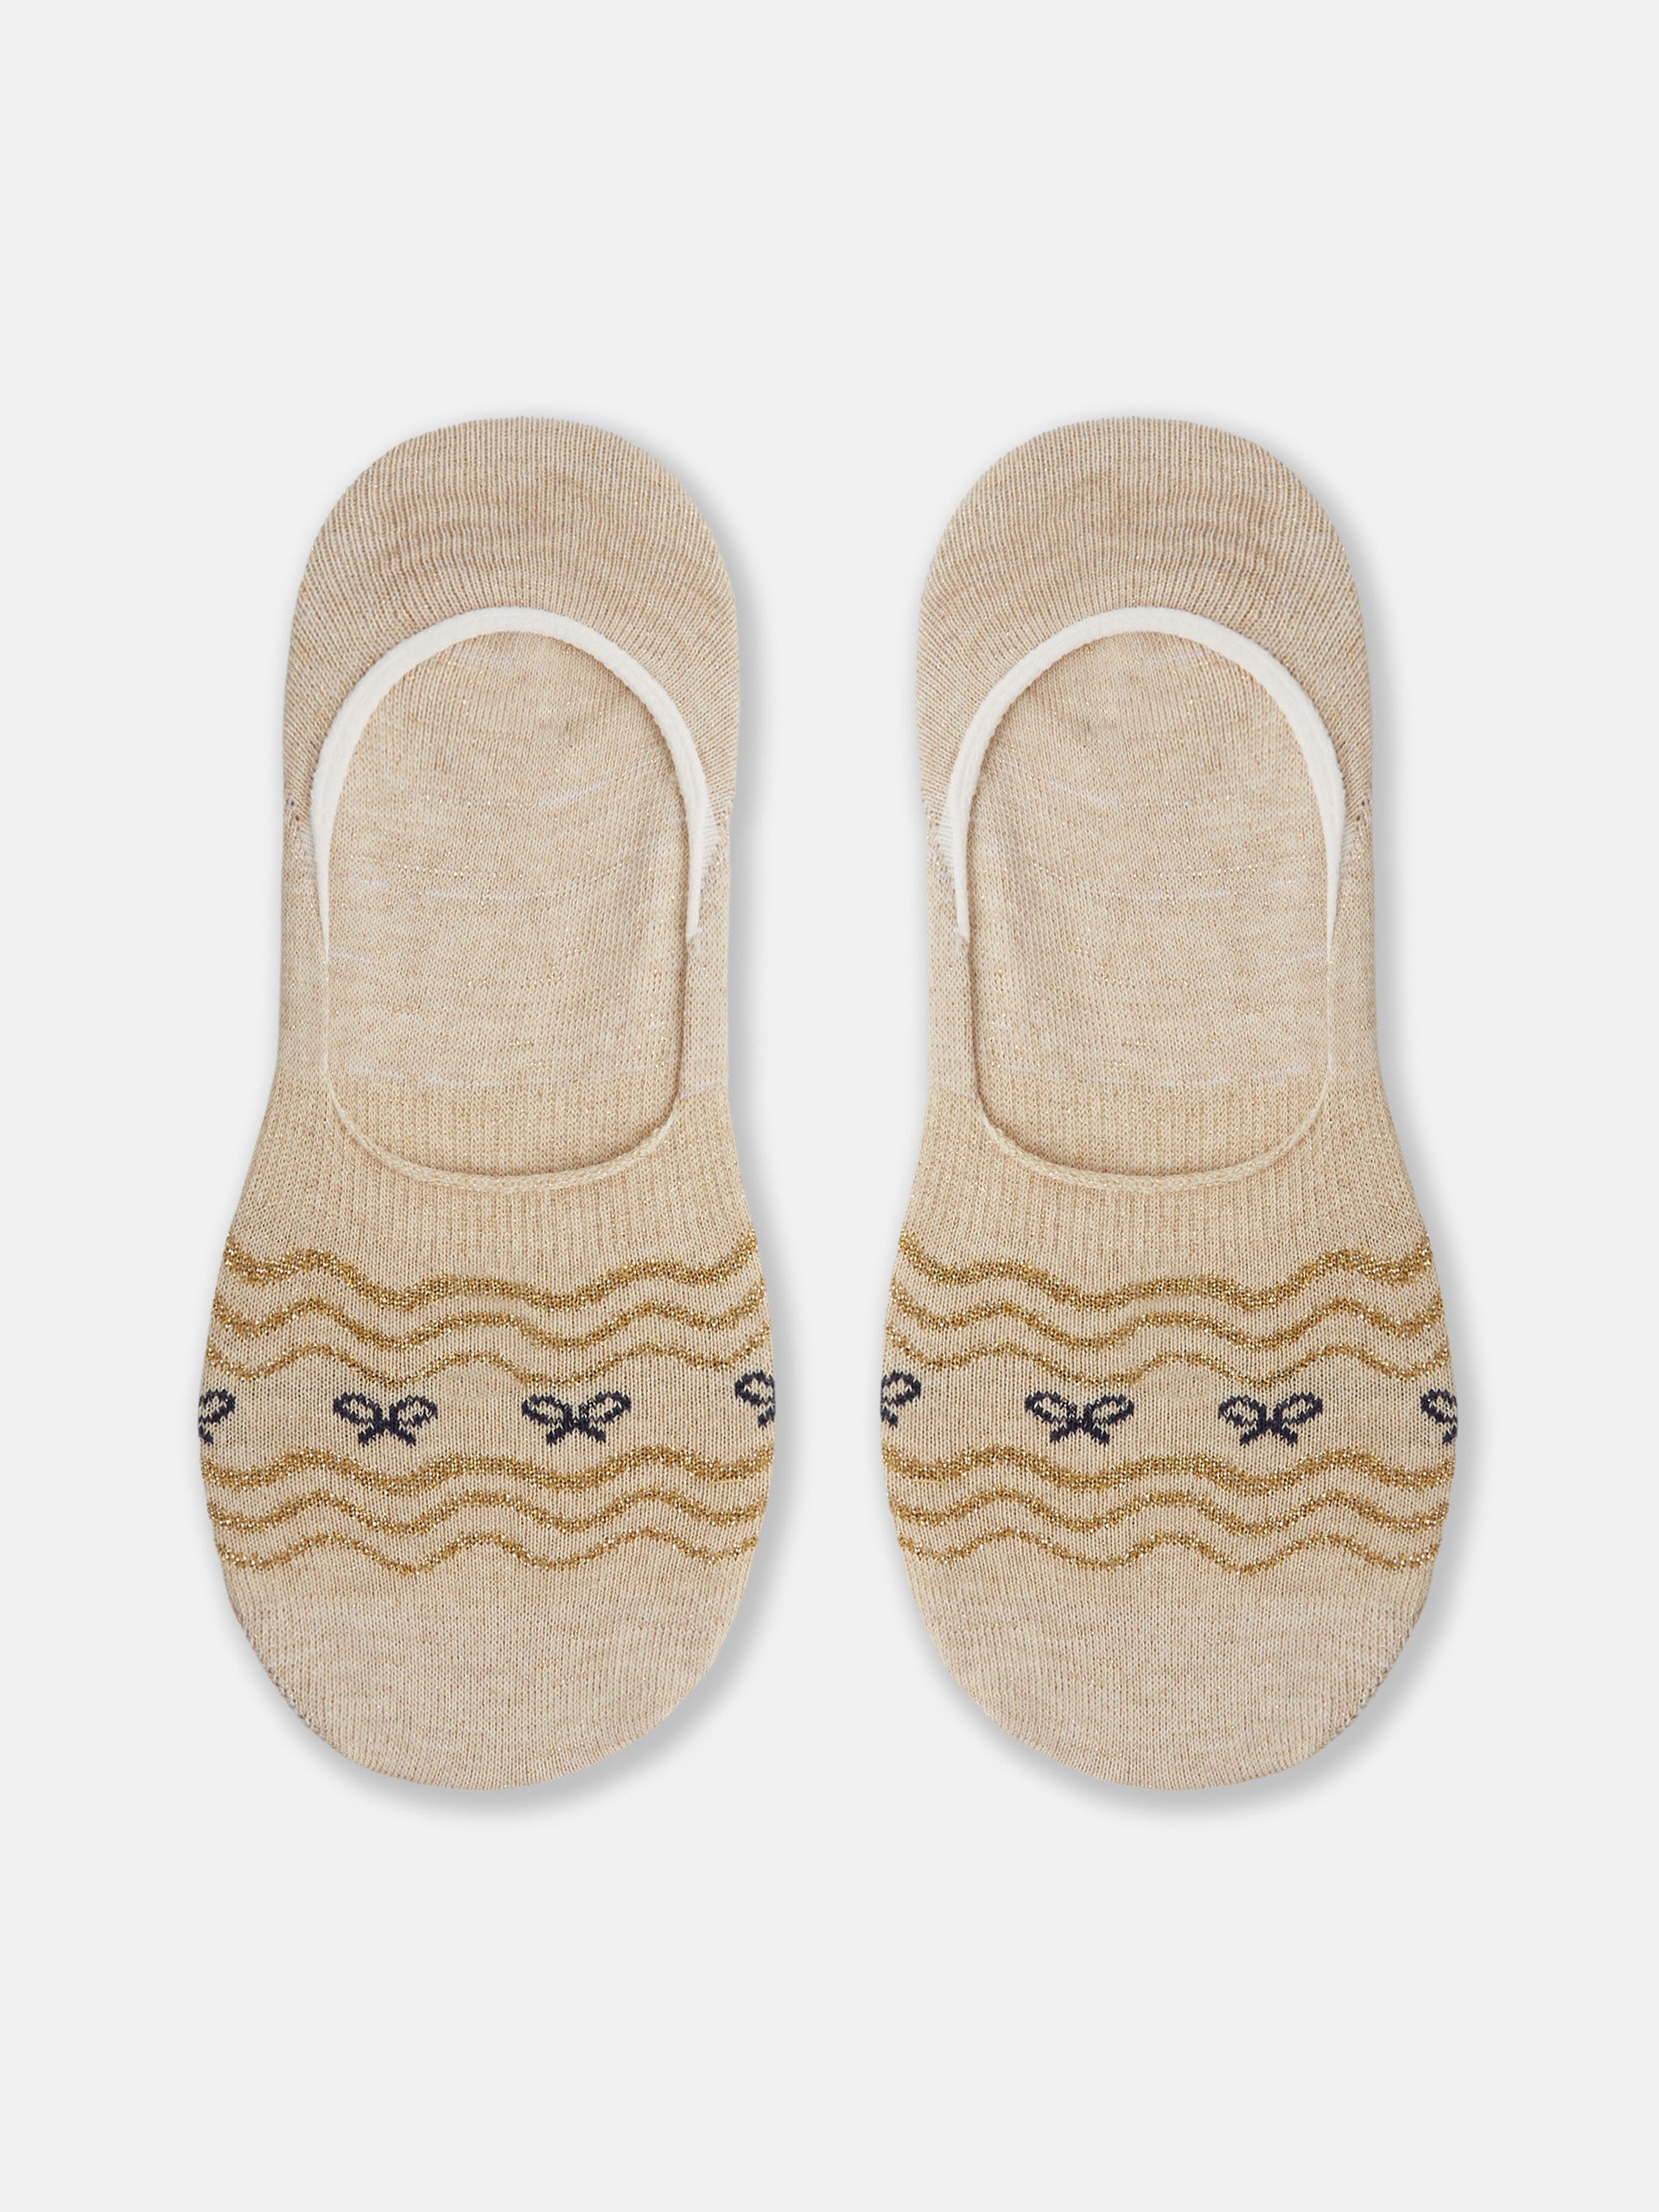 Gentle Grip - calcetines mujer sin goma colores fantasia estampados de  algodon tamaño 37-42 eur (GG195): : Moda